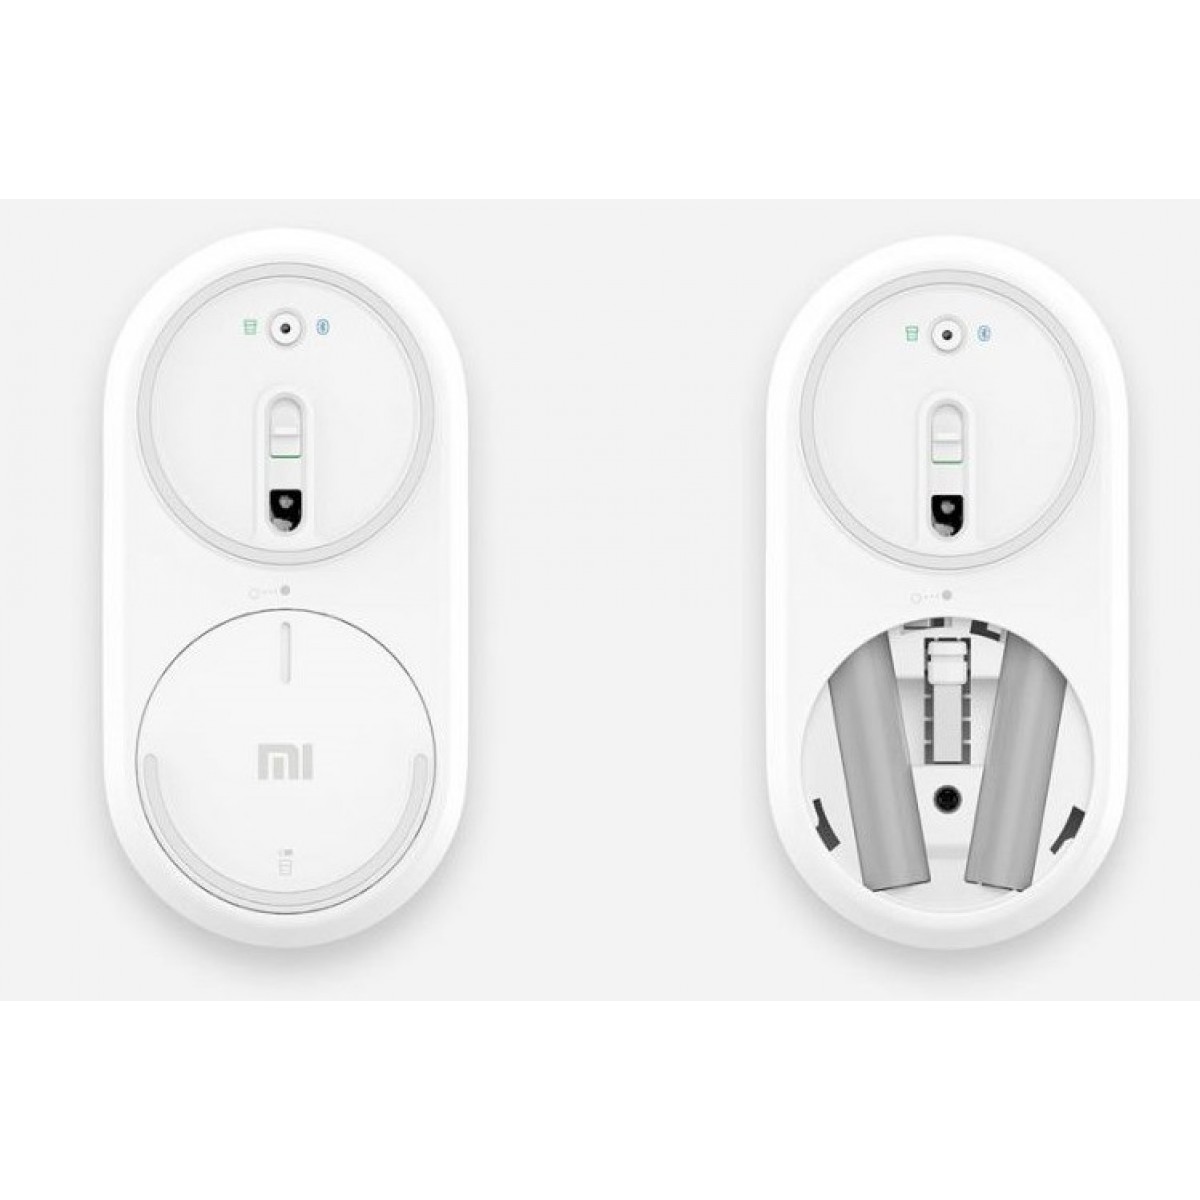 Xiaomi Mi Portable Mouse Silver